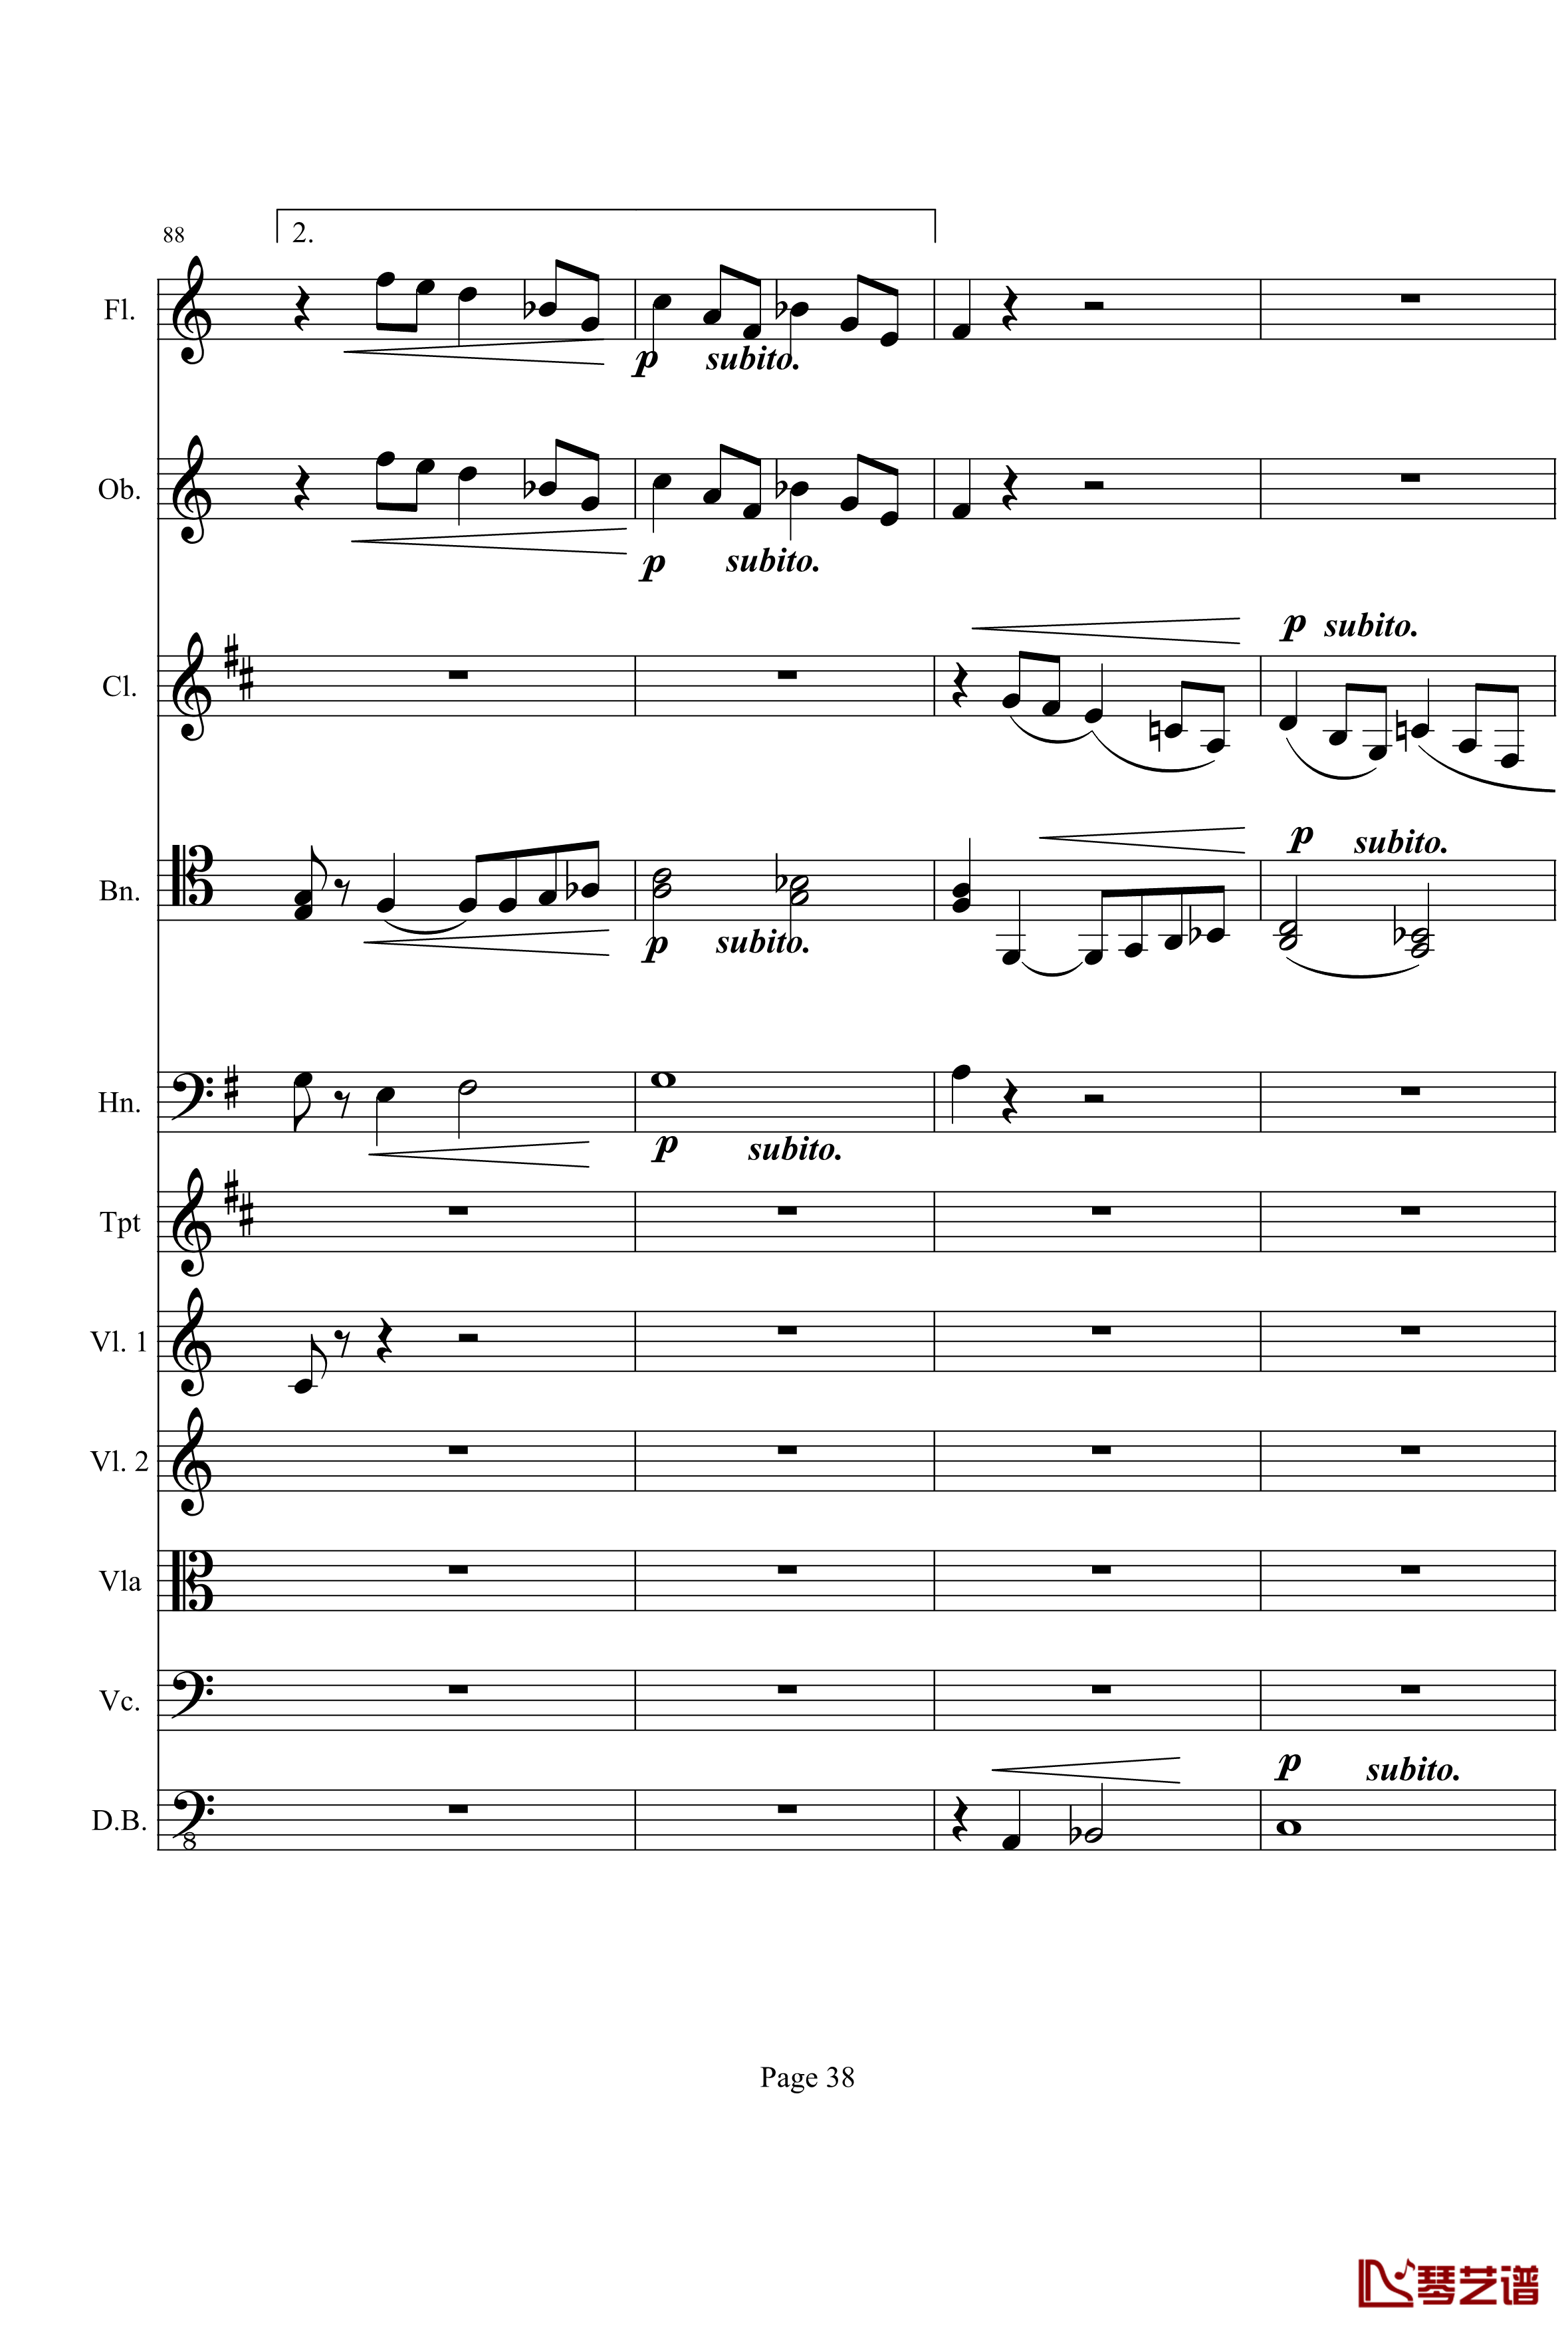 奏鸣曲之交响钢琴谱-第21-Ⅰ-贝多芬-beethoven38